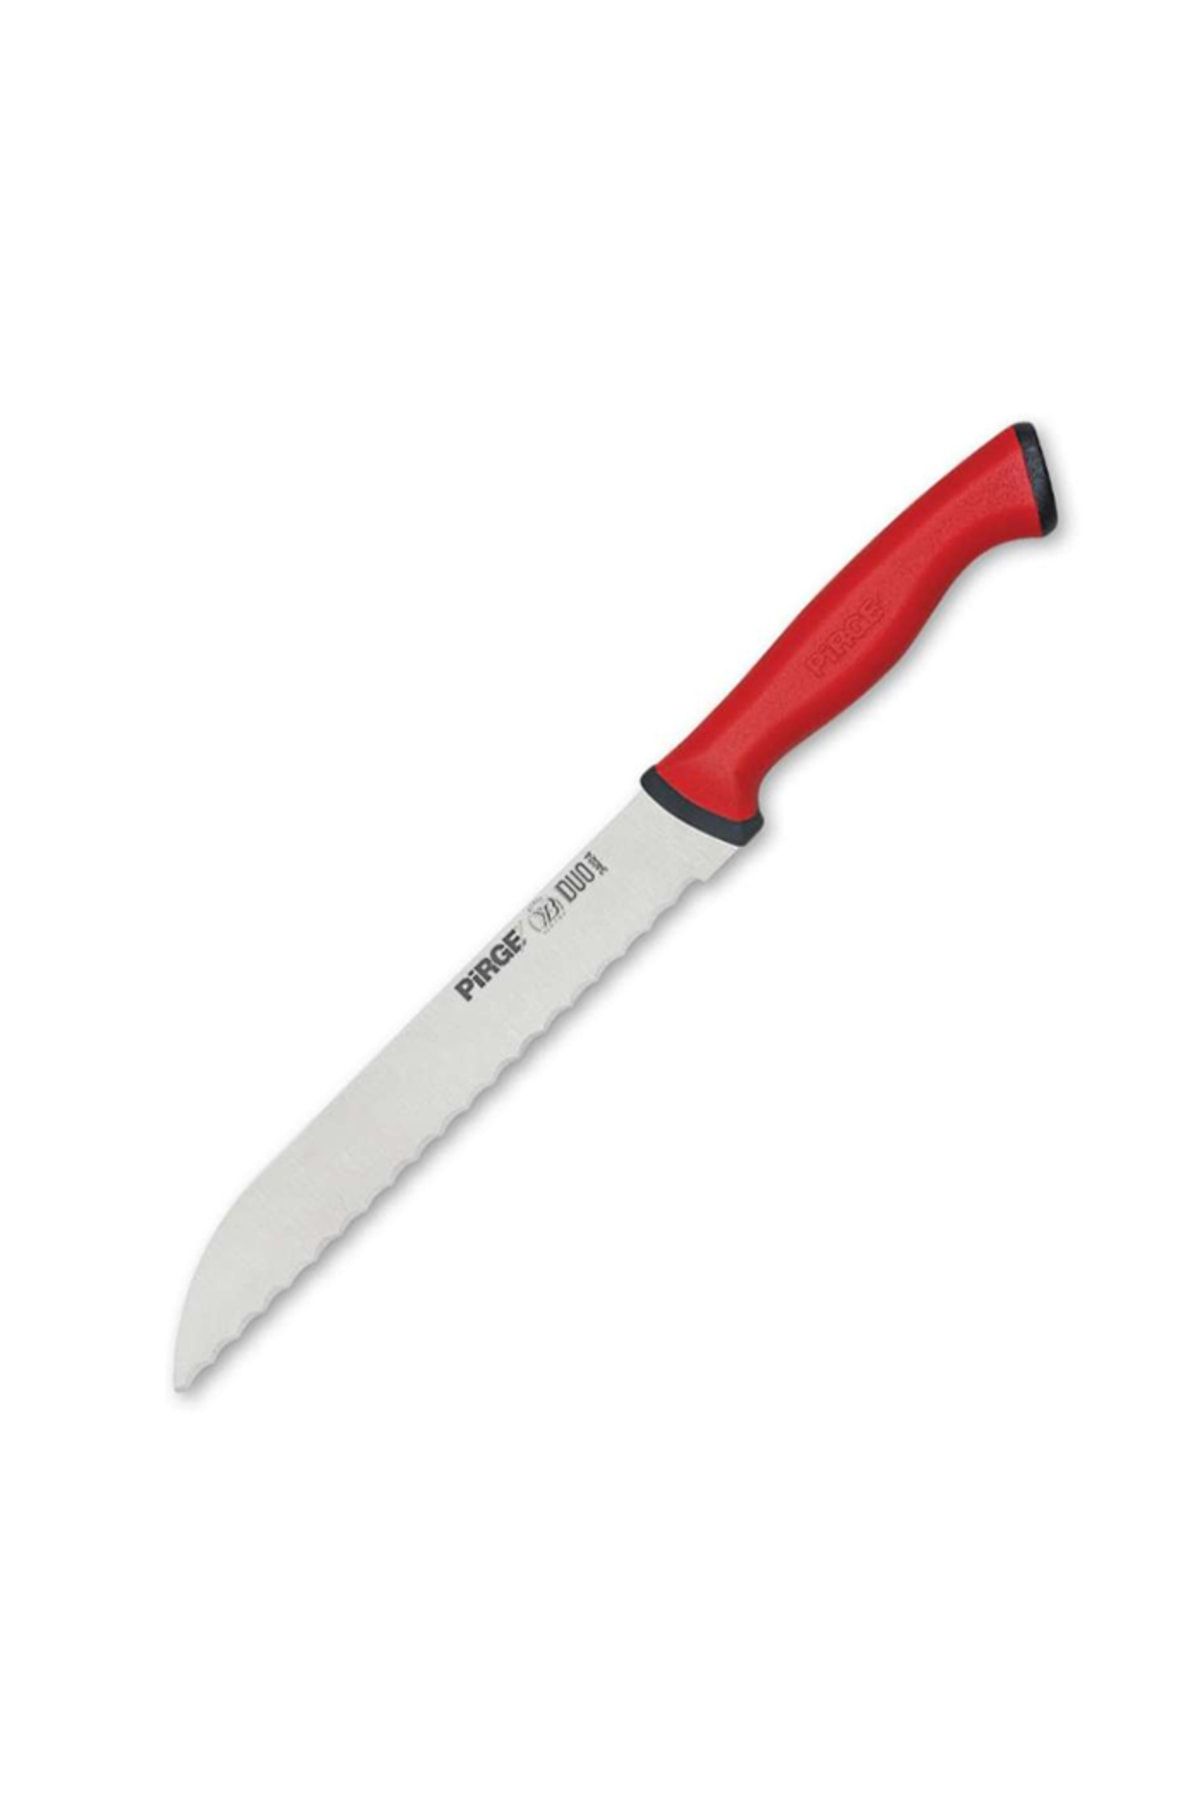 Pirge Duo Ekmek Bıçağı Pro Dişli - Kırmızı - 17,5 Cm